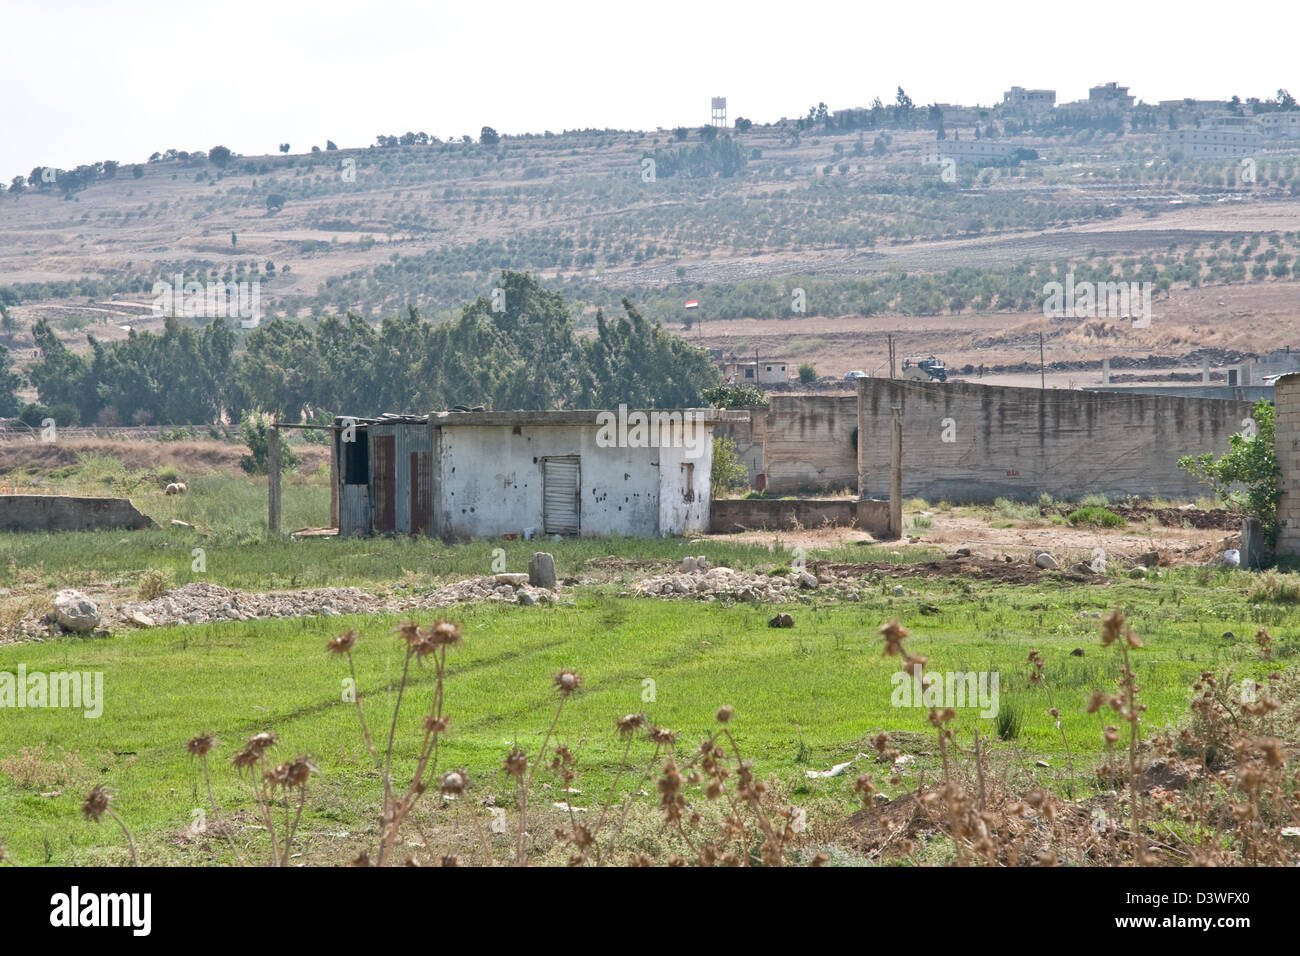 Konkrete Hütten in der libanesischen Nordregion des Wadi Khaled befindet sich wenige Meter entfernt von der Syrien-Libanon-Grenze (Hintergrund). Stockfoto